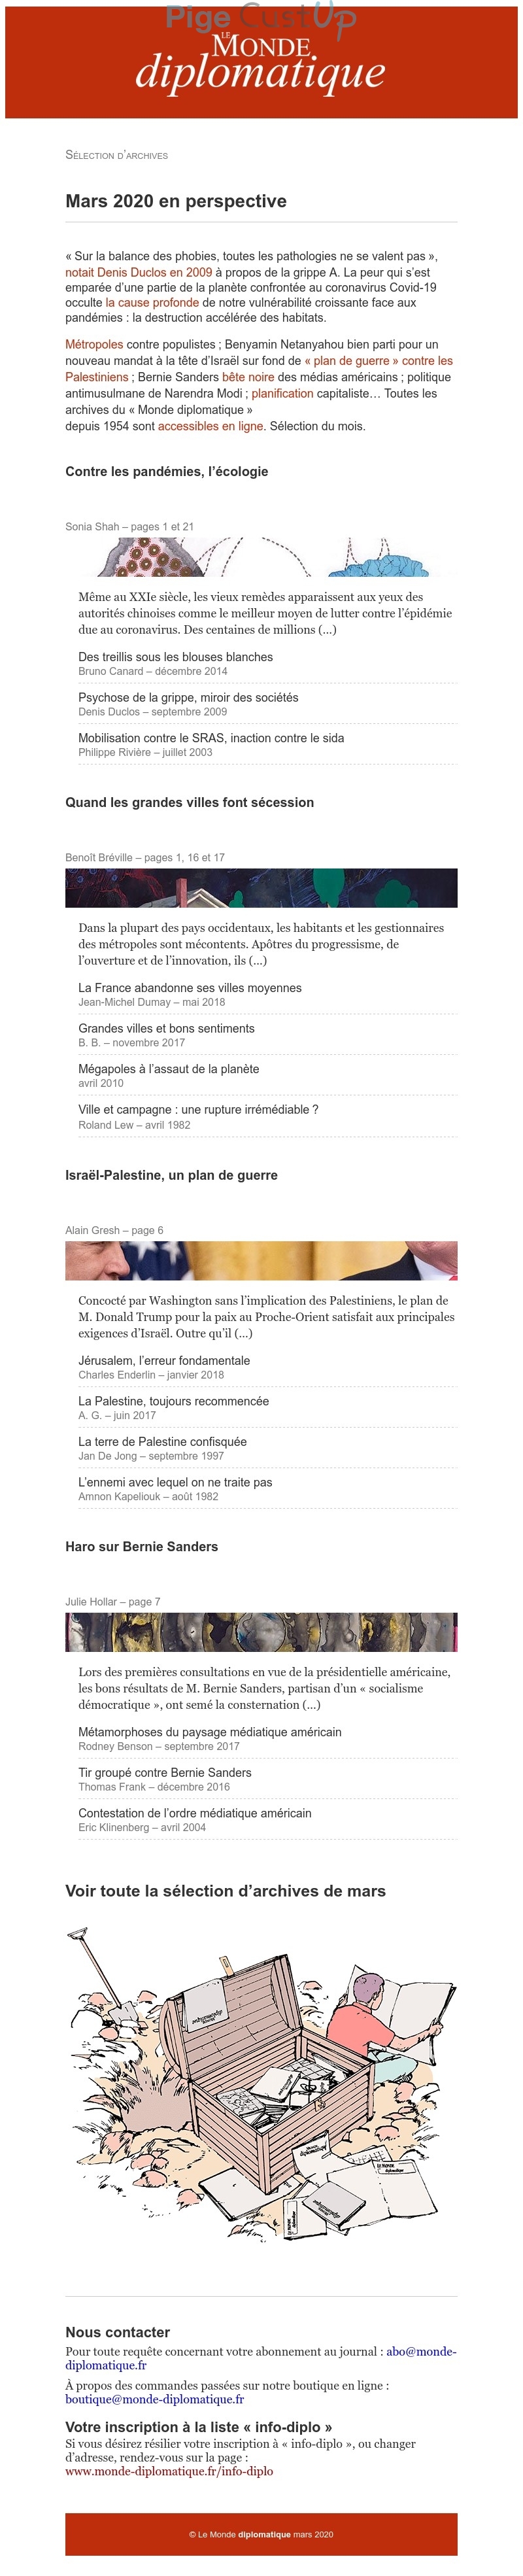 Exemple de Type de media  e-mailing - Le Monde diplomatique - Marketing relationnel - Newsletter